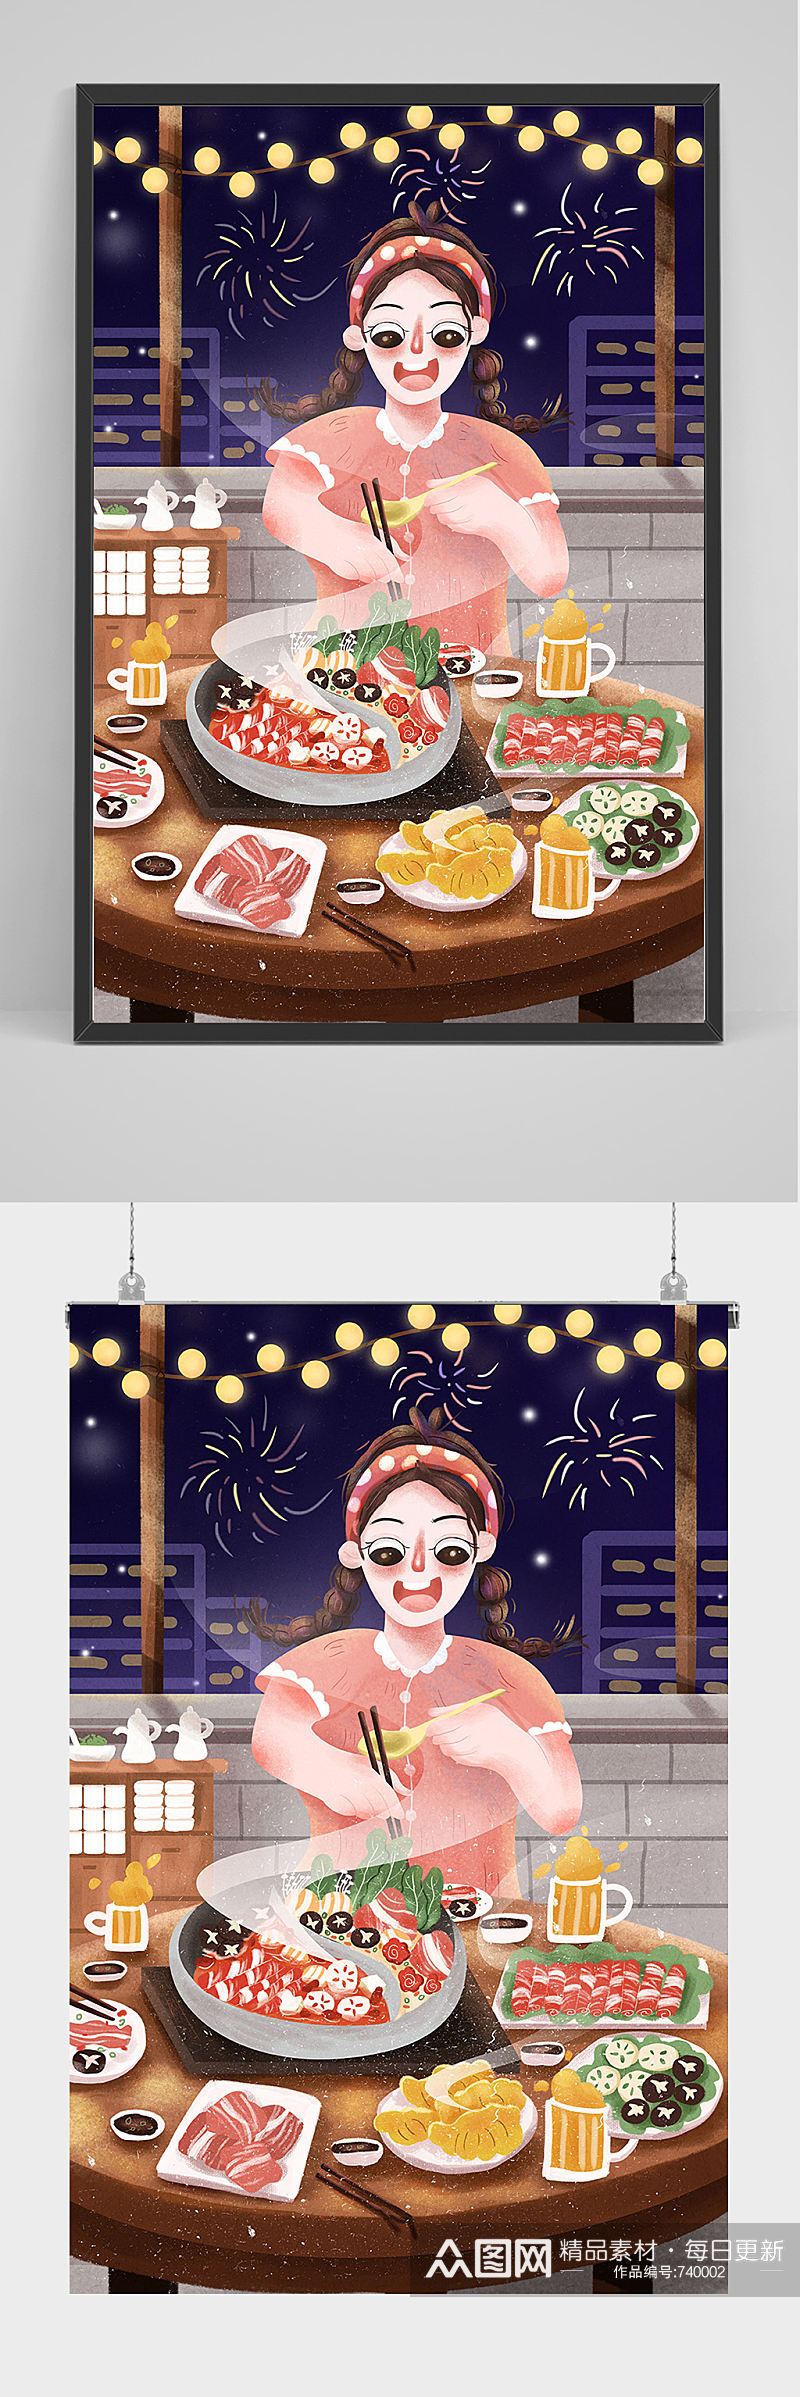 精品手绘吃火锅的女子插画设计素材